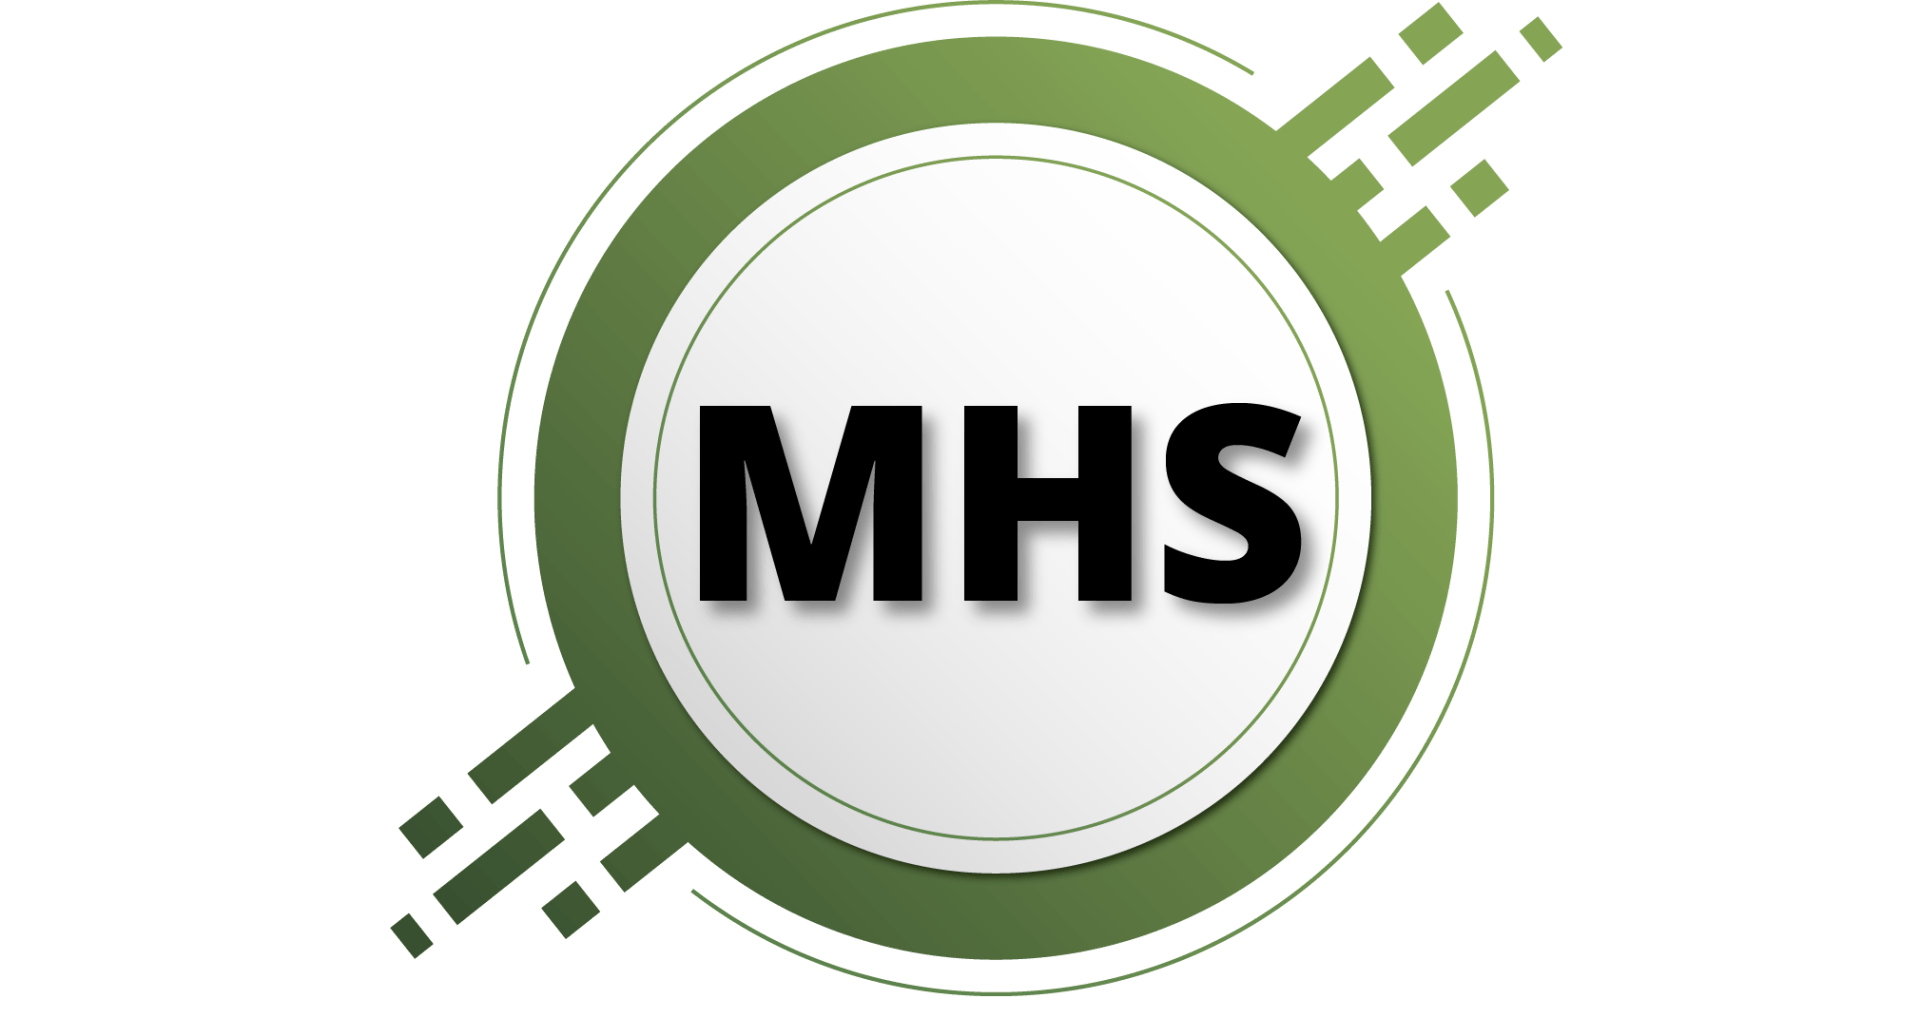 MHS-Onlineschulungen